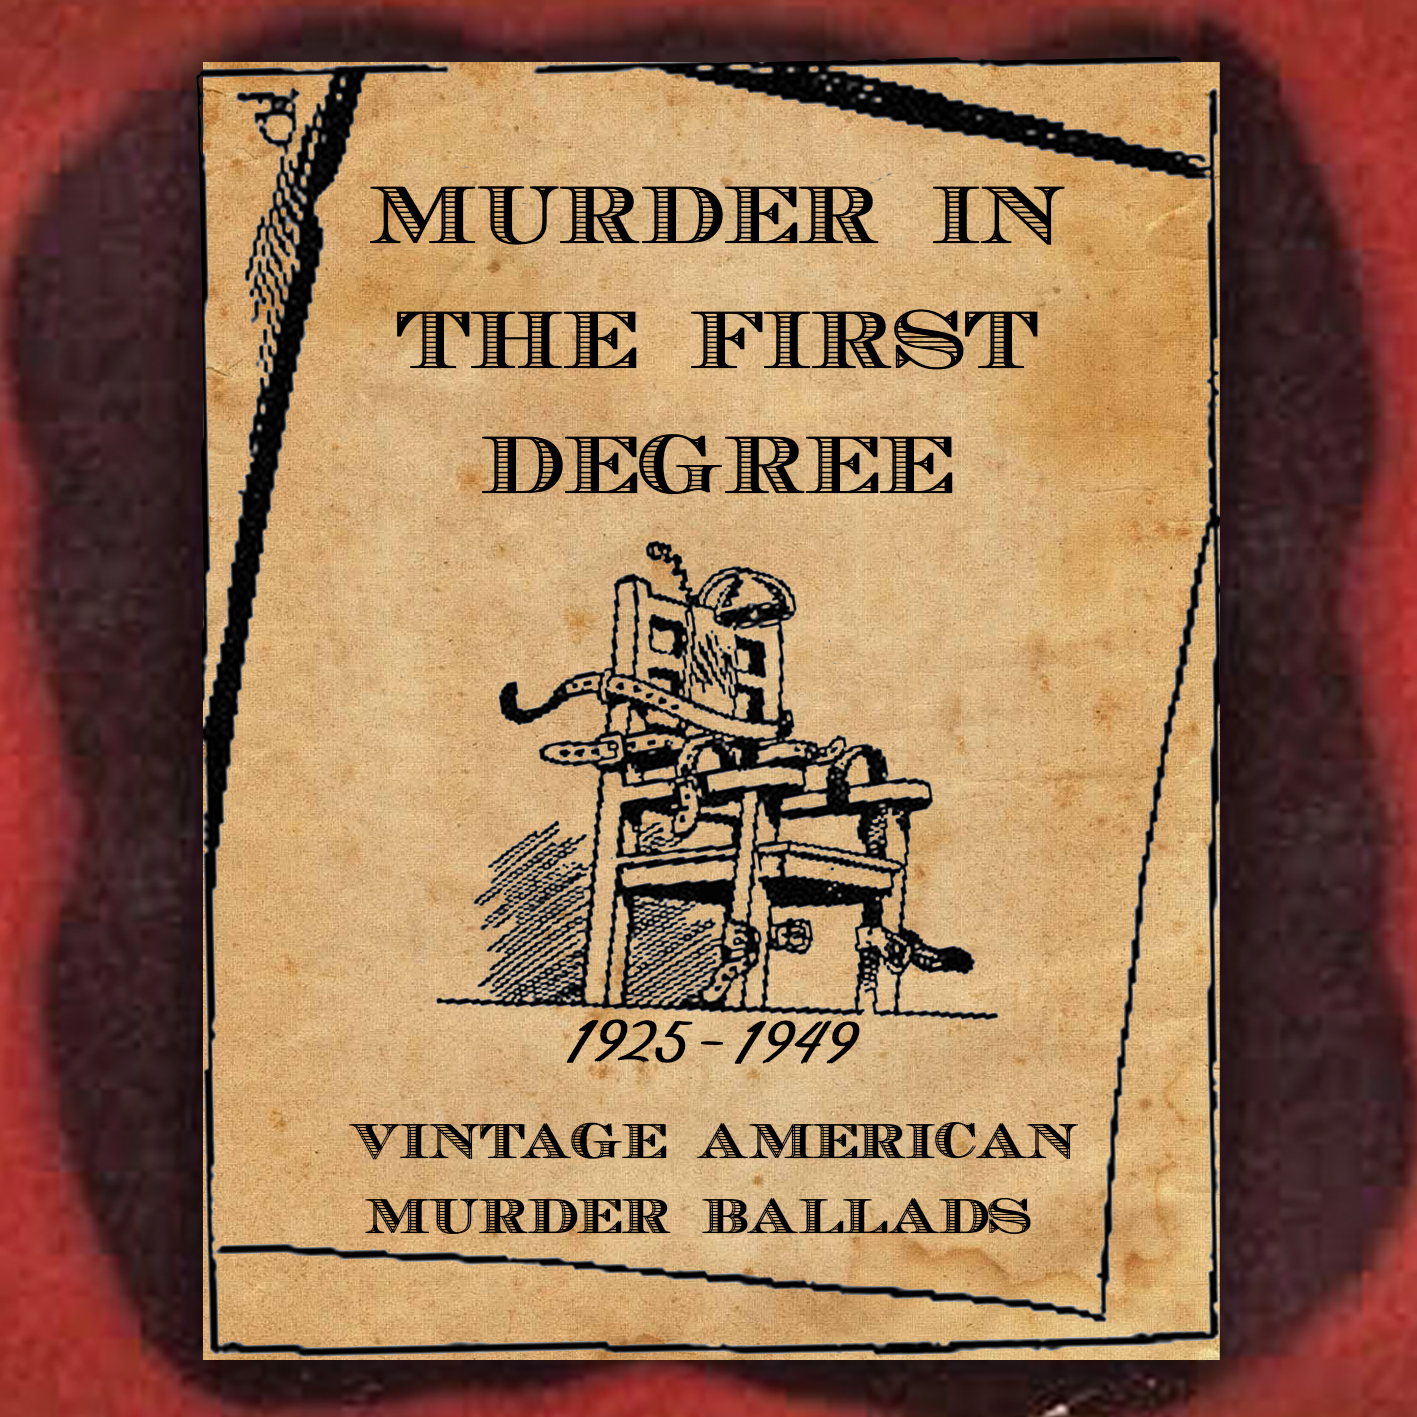 ‘Murder in the First Degree’ Vintage American Murder Ballads 1925- 1949